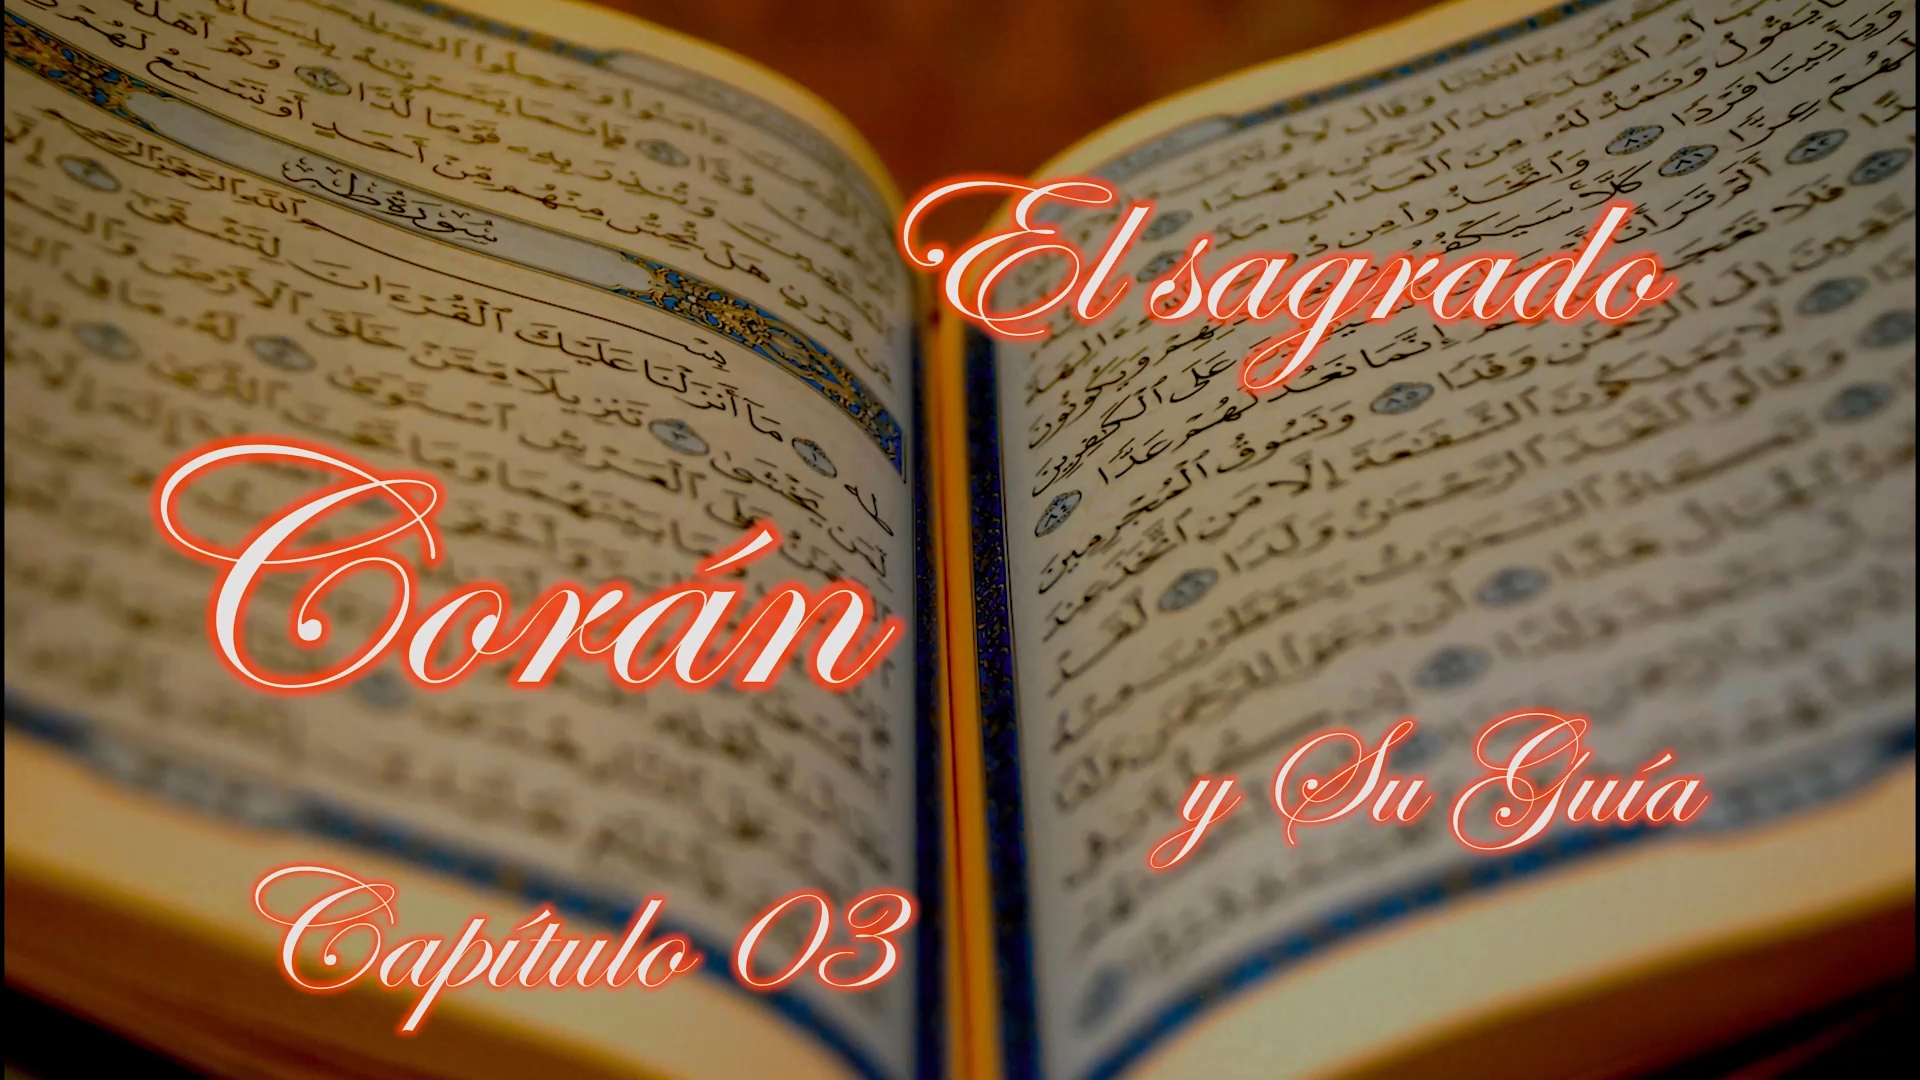 El sagrado Corán y su Guía, capítulo 03